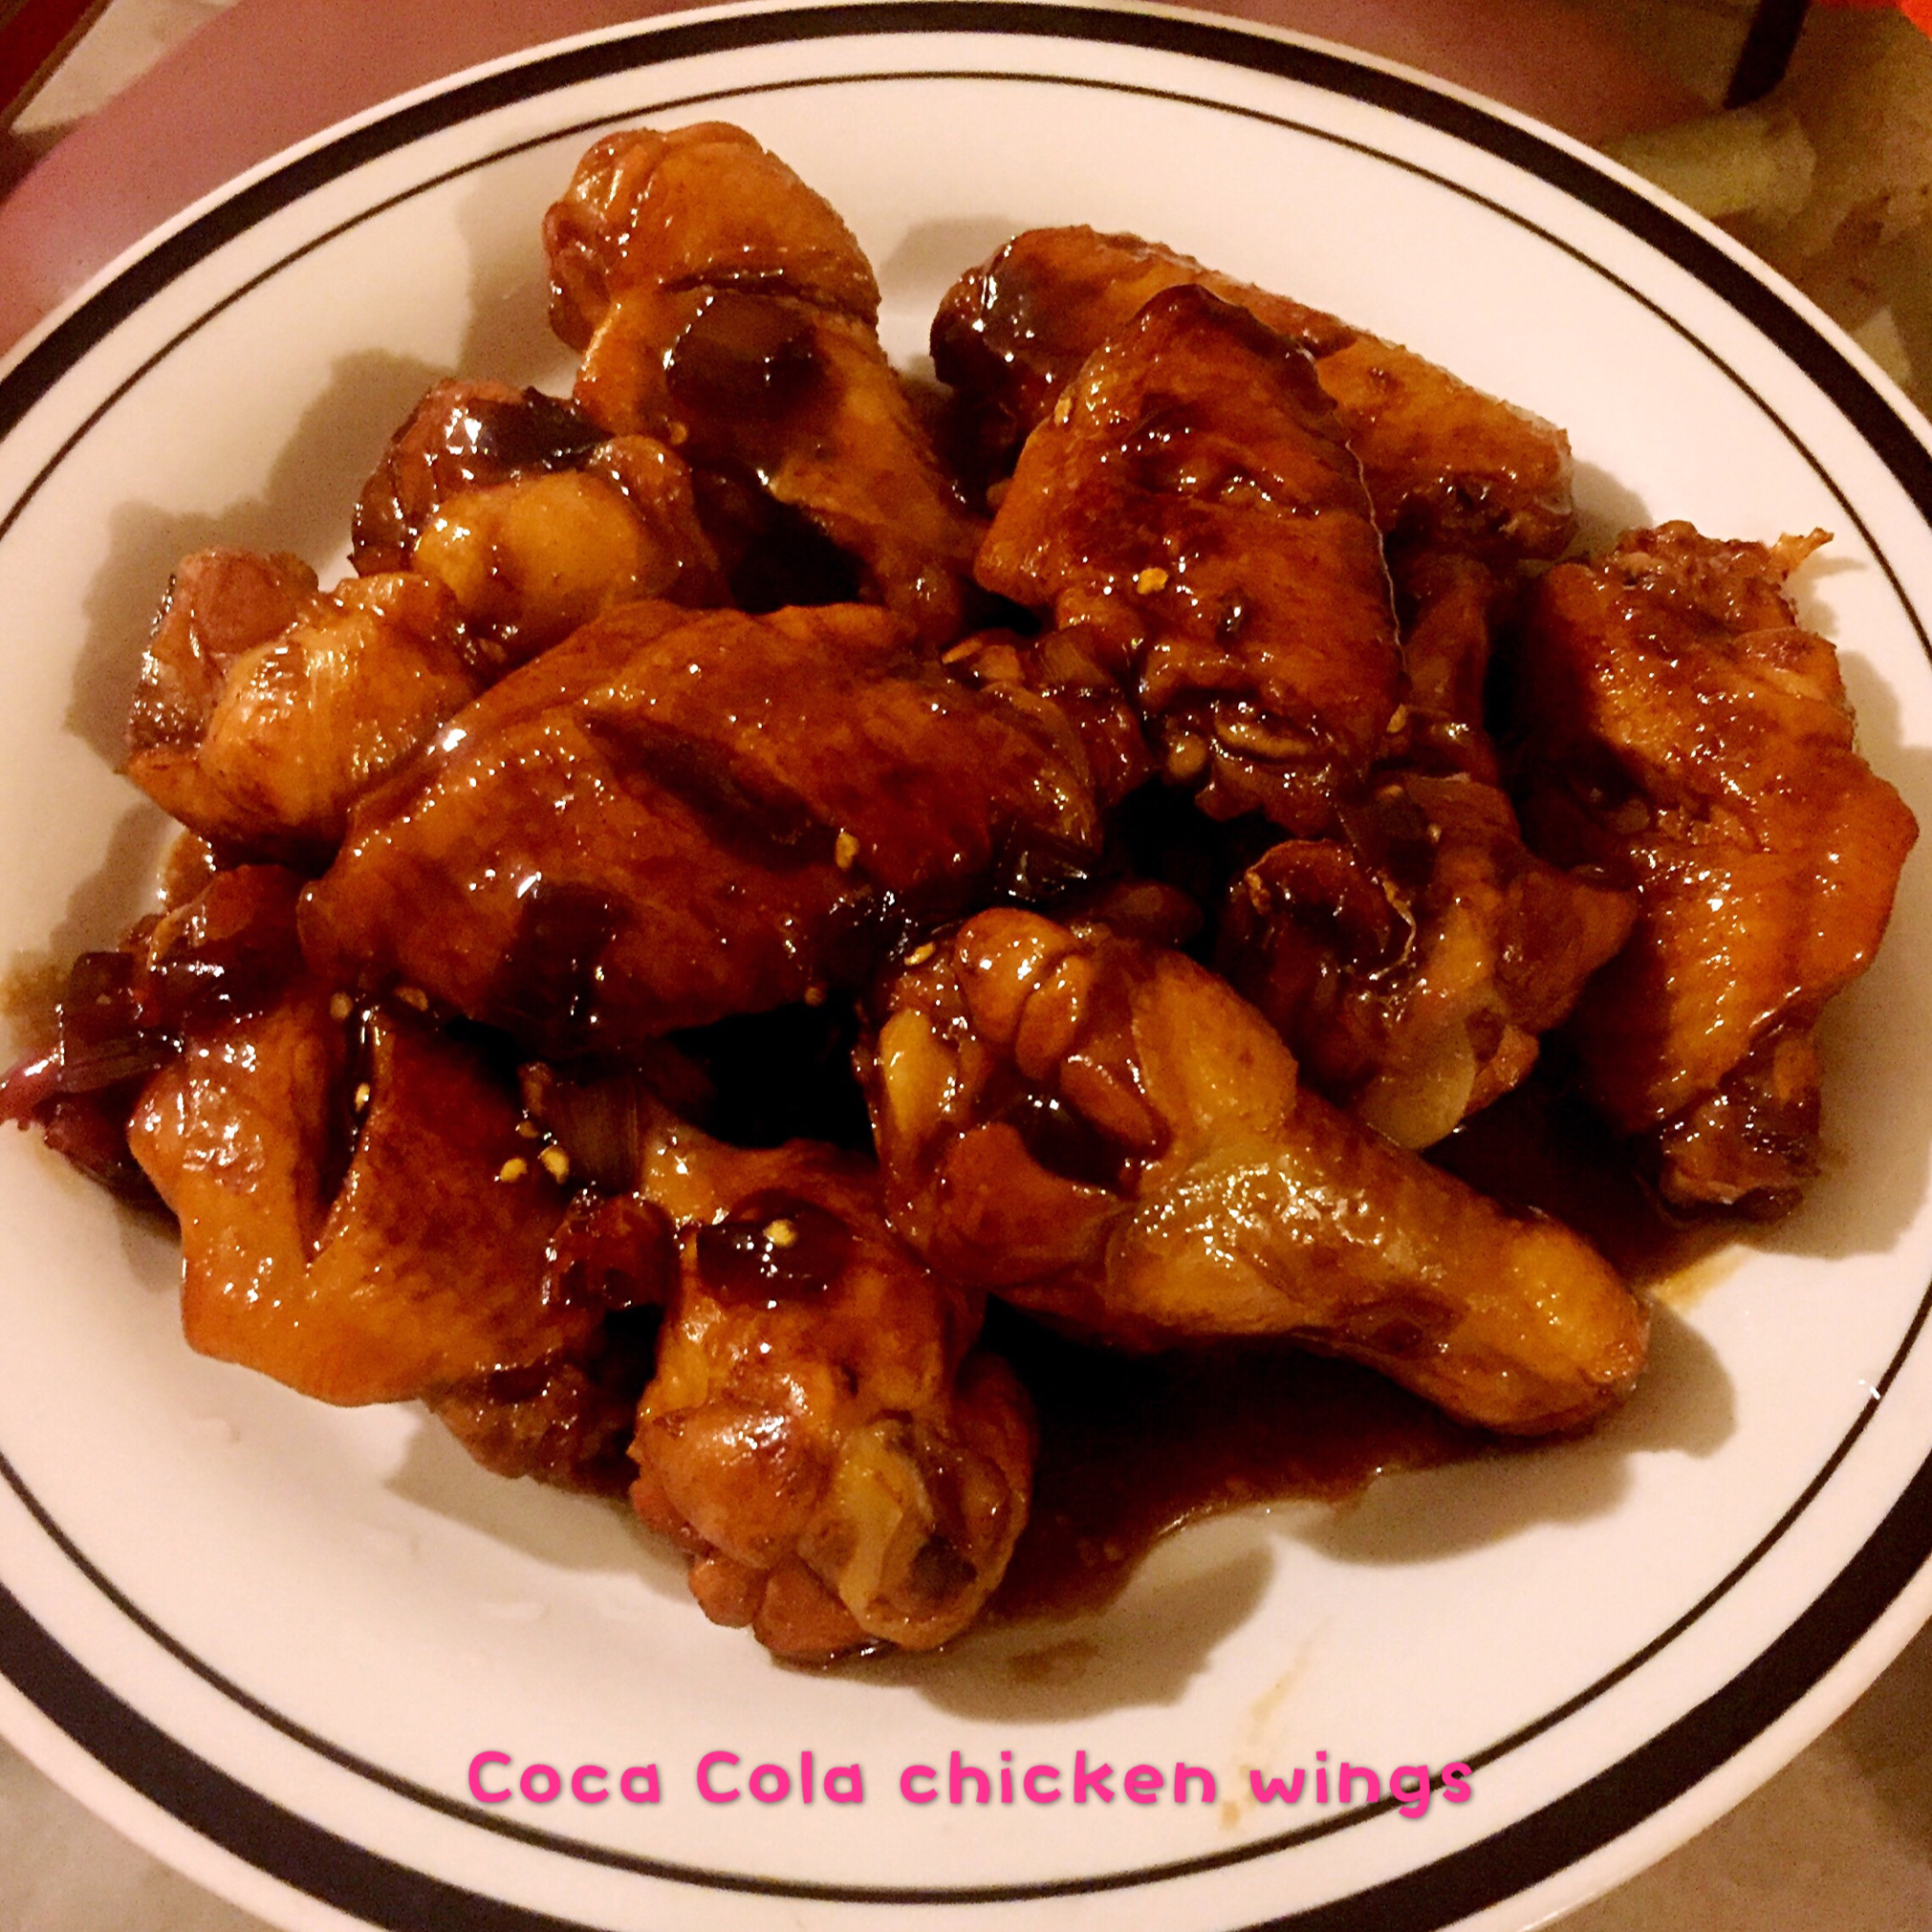 可乐鸡翅 Coca Cola Chicken wings